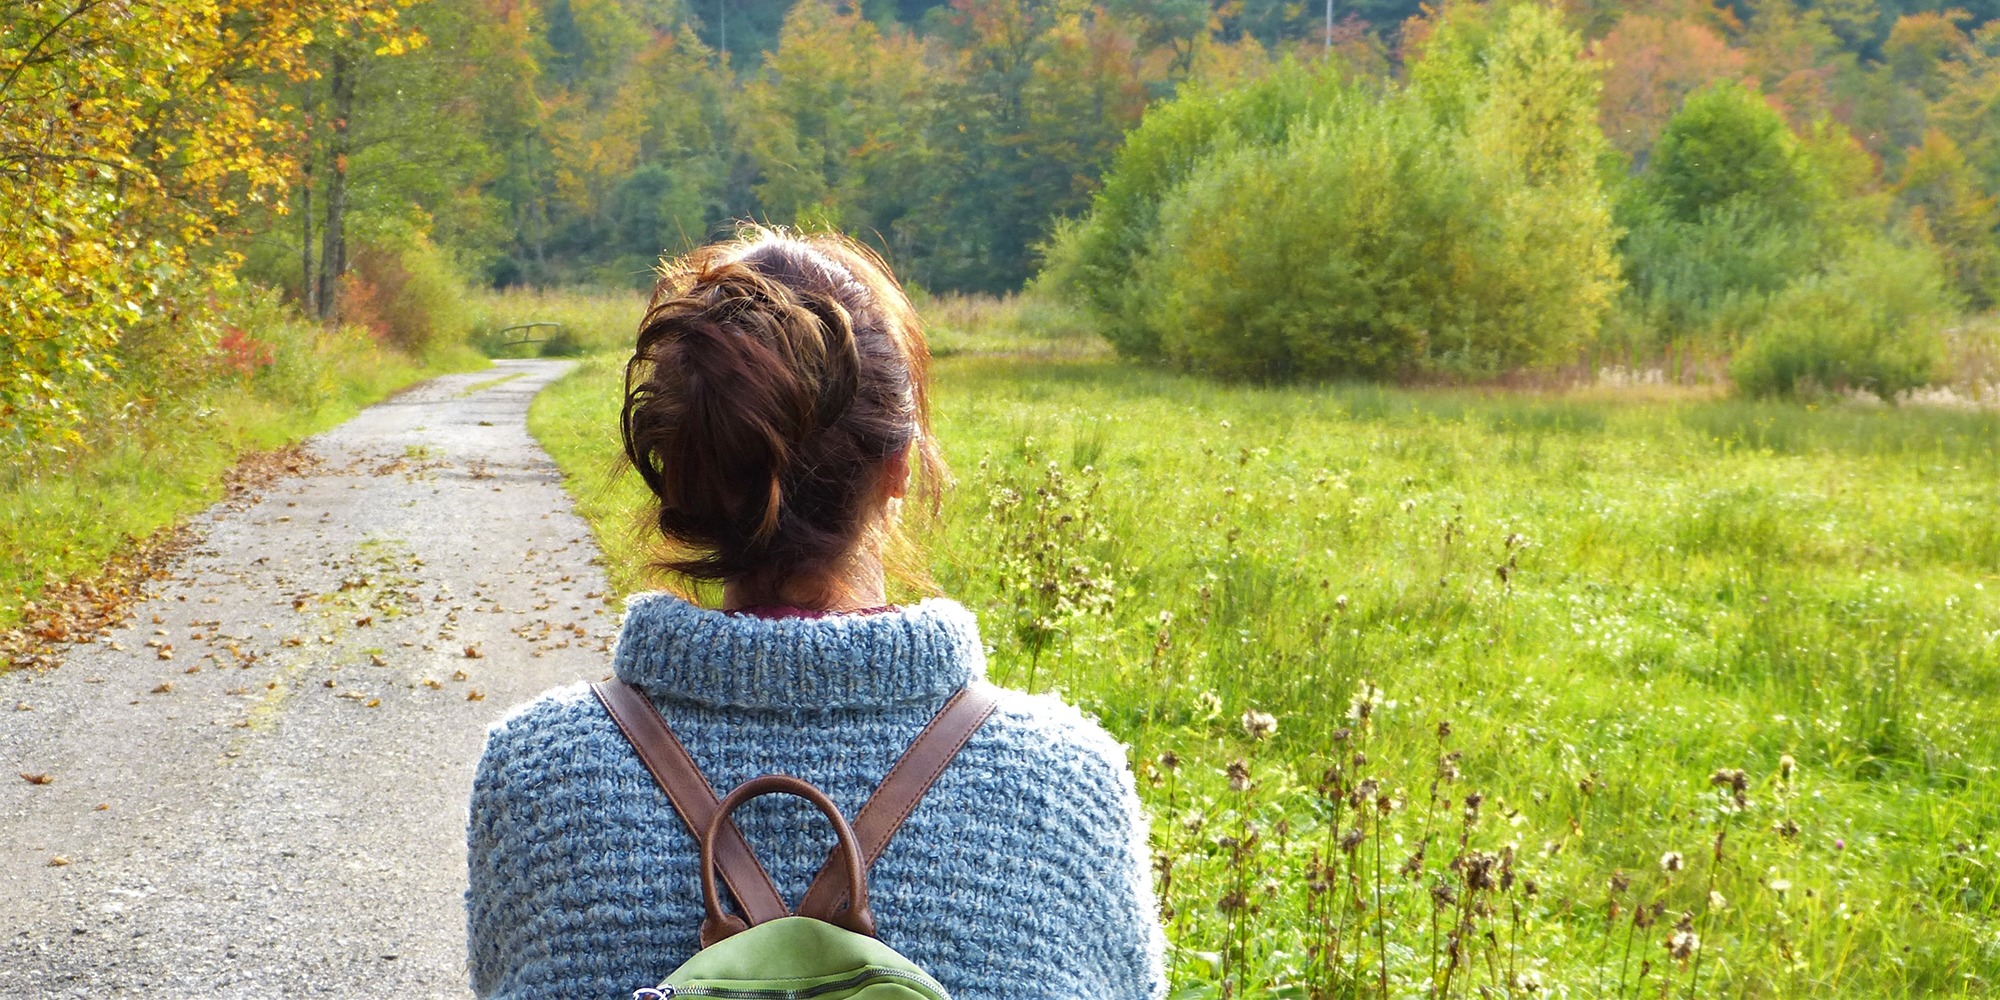 ryggren på en kvinna i grå ylletröja och brunt uppsatt hår, på en grusväg i vackert öppet höstlandskap med ängar och skog.